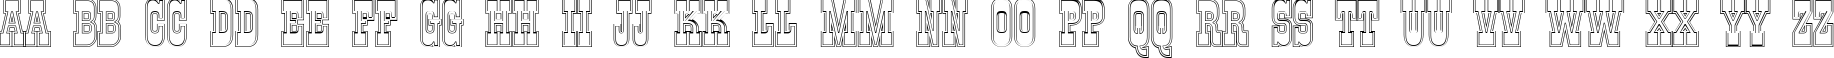 Пример написания английского алфавита шрифтом a_GildiaTitulDblOtl